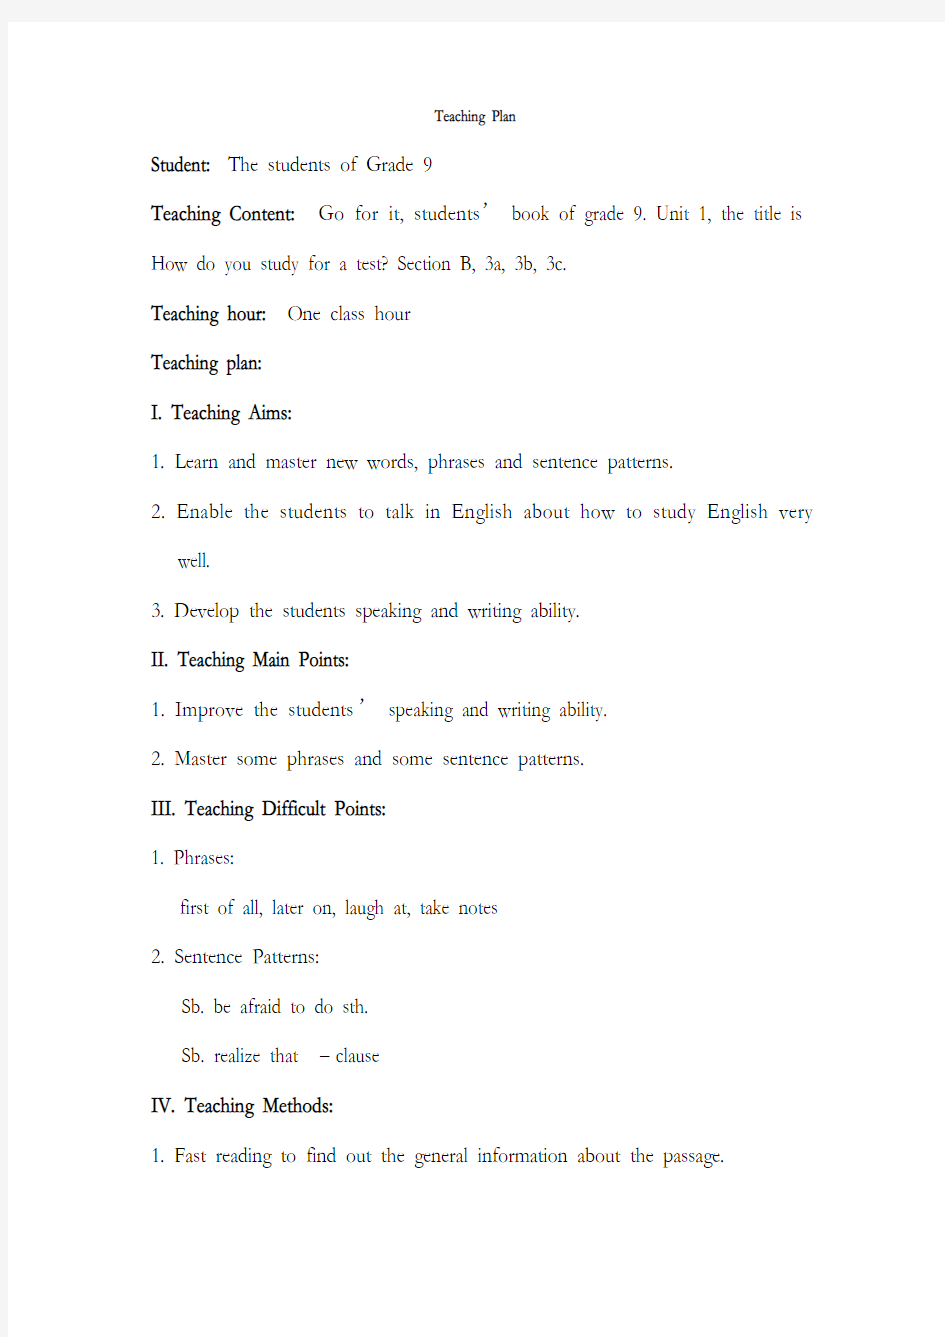 初中英语教案课程模板